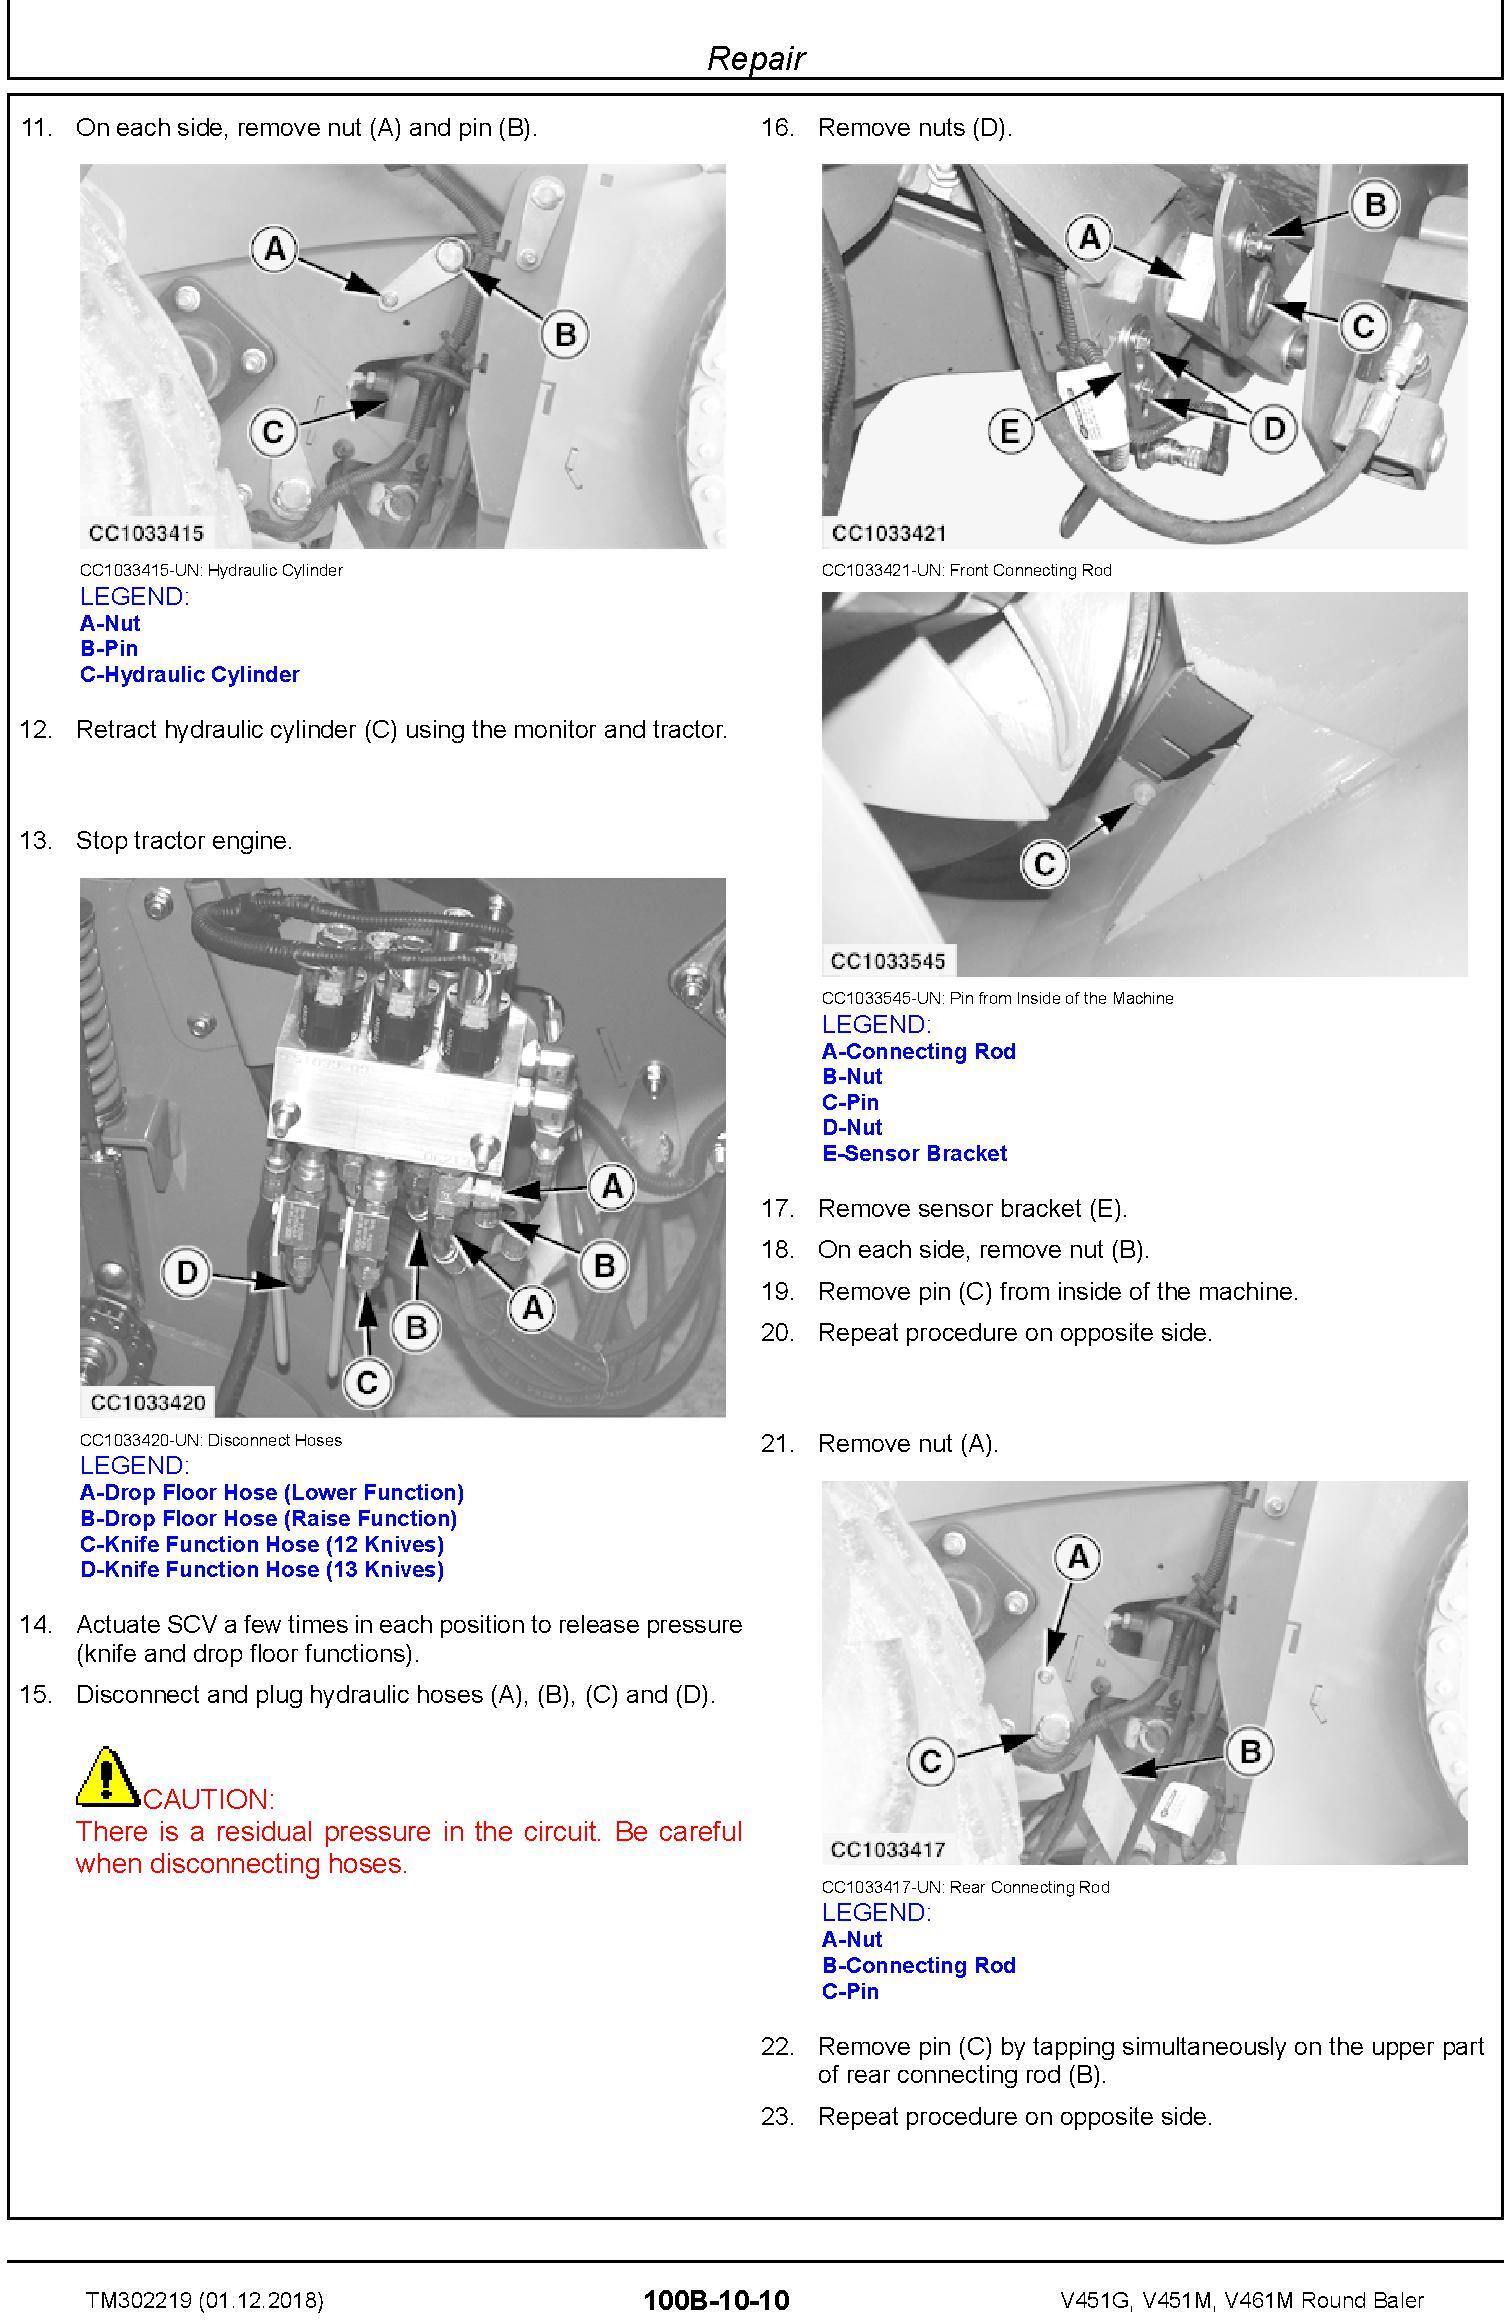 John Deere V451G, V451M, V461M Round Baler Service Repair Technical Manual (TM302219) - 2